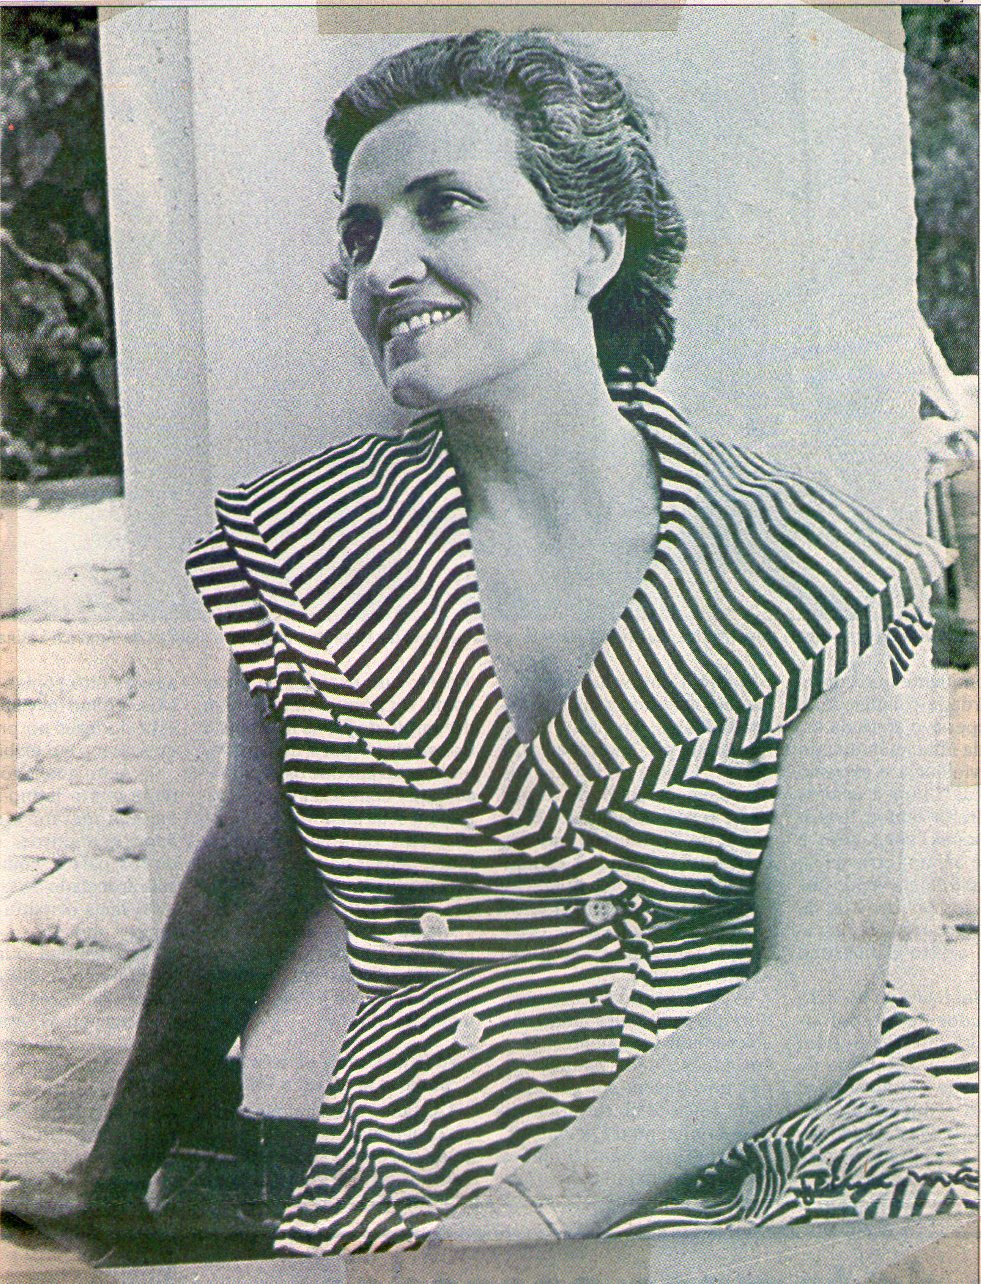 C-2416 - Centenário do Nascimento de Cecília Meireles (1901-1964) - Poetisa  - 2001